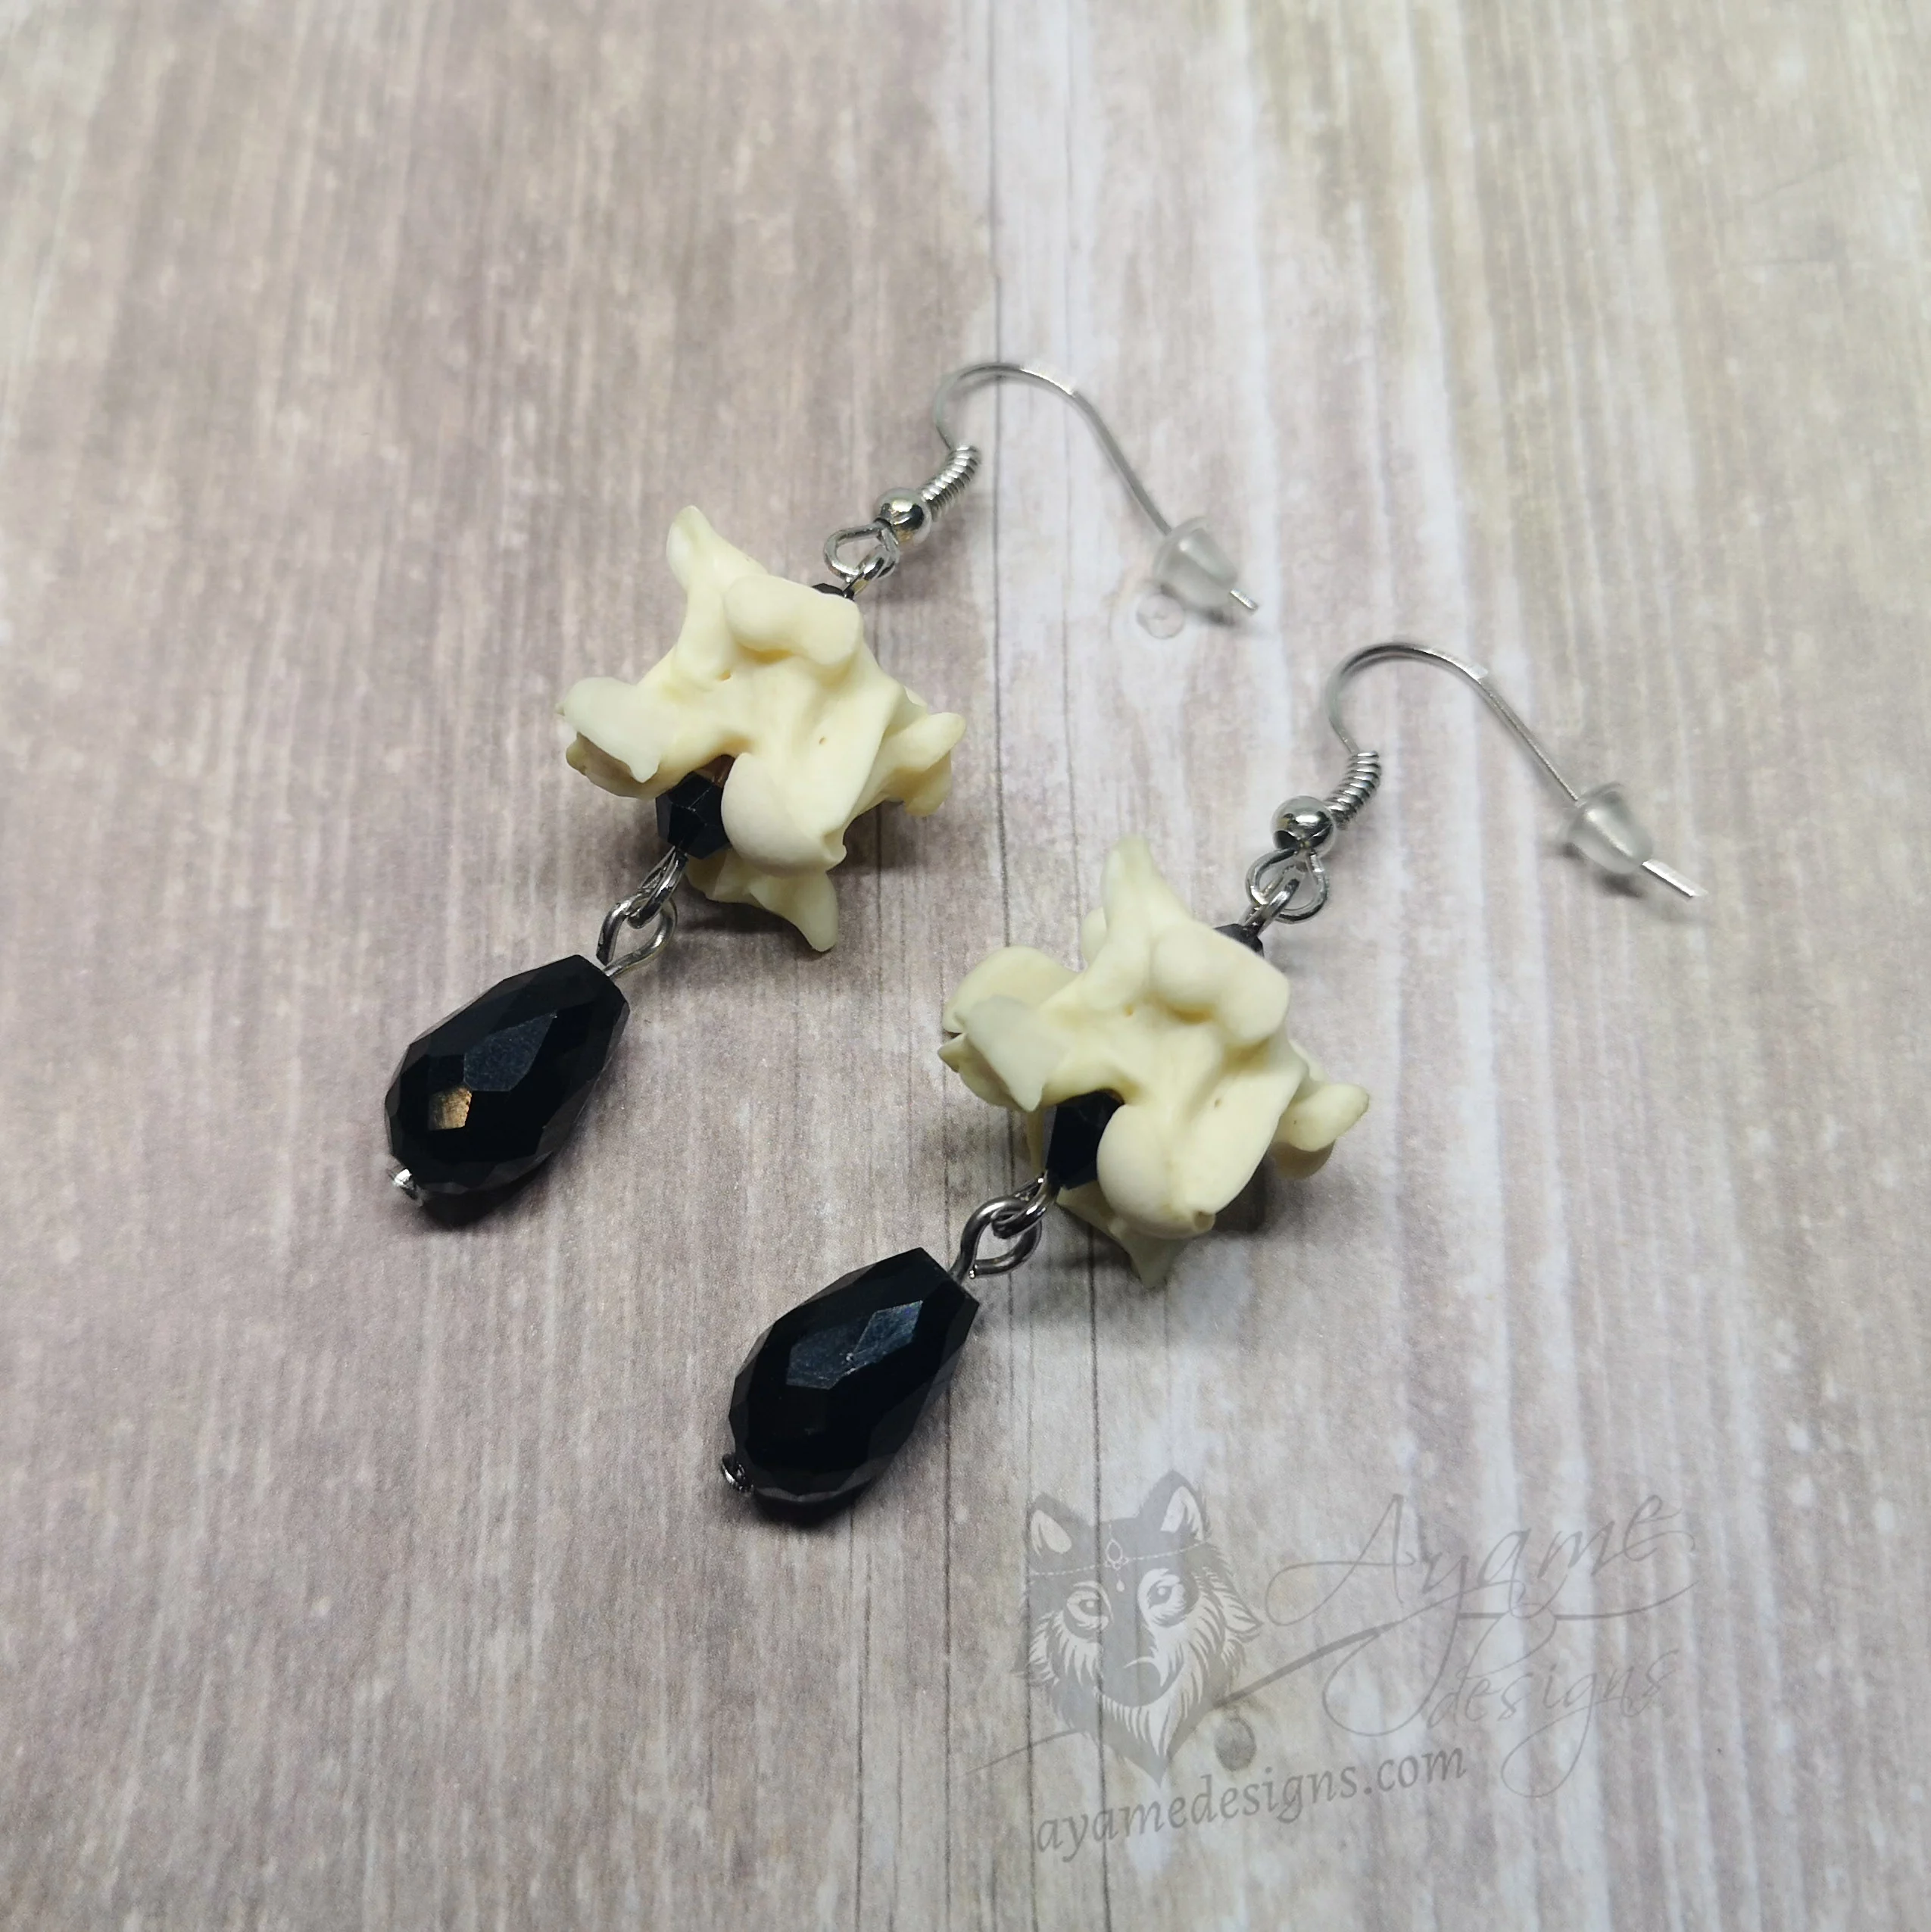 Handmade earrings with snake vertebrae and black Austrian crystal beads, on stainless steel earring hooks